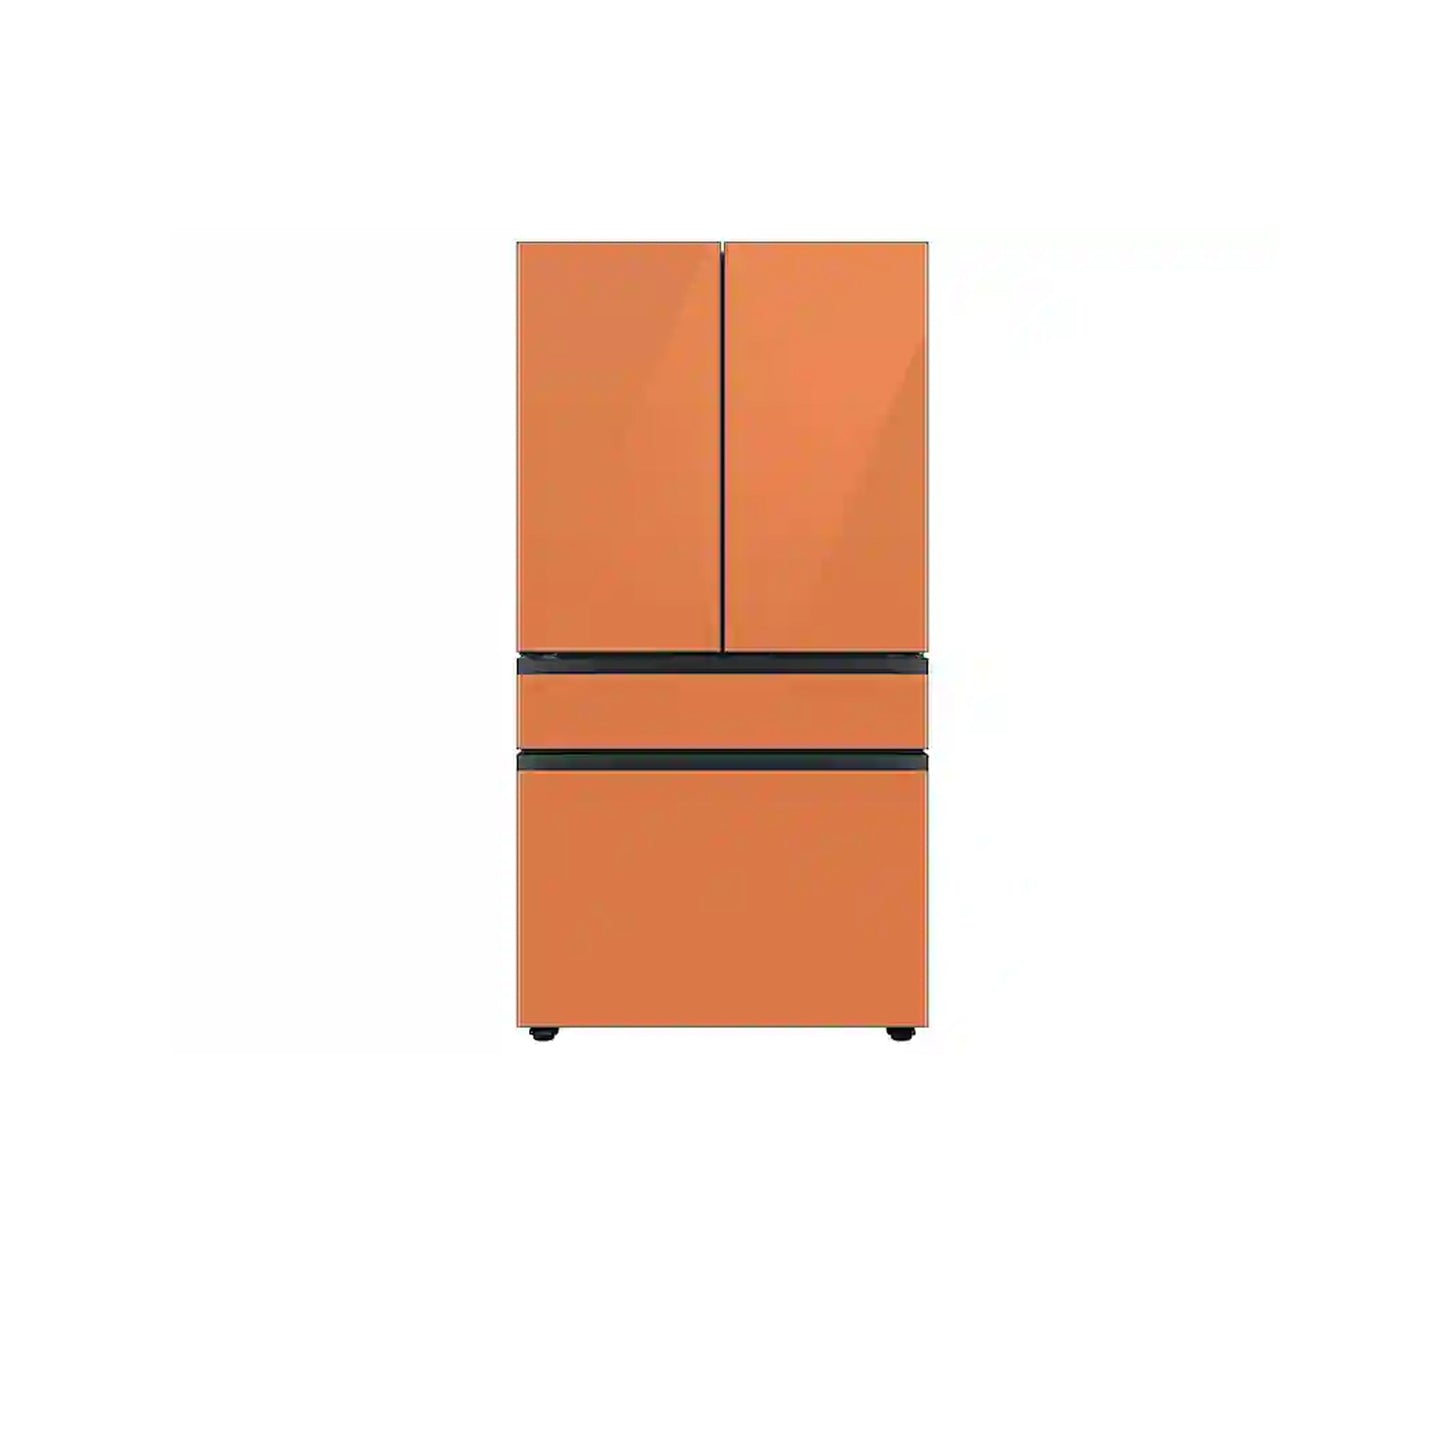 ثلاجة مخصصة بباب فرنسي بأربعة أبواب (23 قدمًا مكعبًا) مع ألوان لوحة الباب قابلة للتخصيص ومركز المشروبات™ بزجاج رمادي غير لامع. 